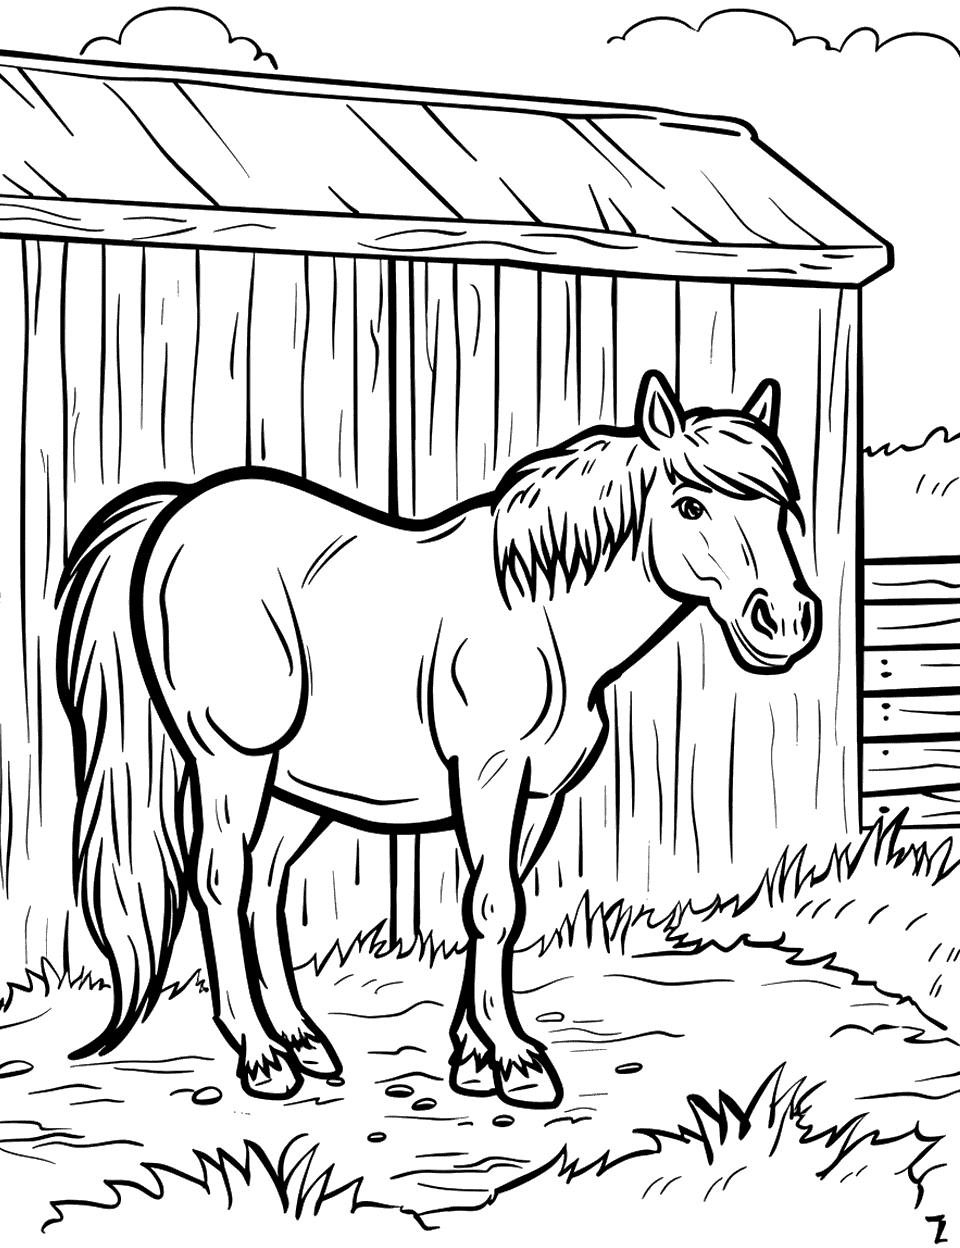 Horse Neighing Near a Barn Farm Animal Coloring Page - A horse standing near a barn, neighing loudly.